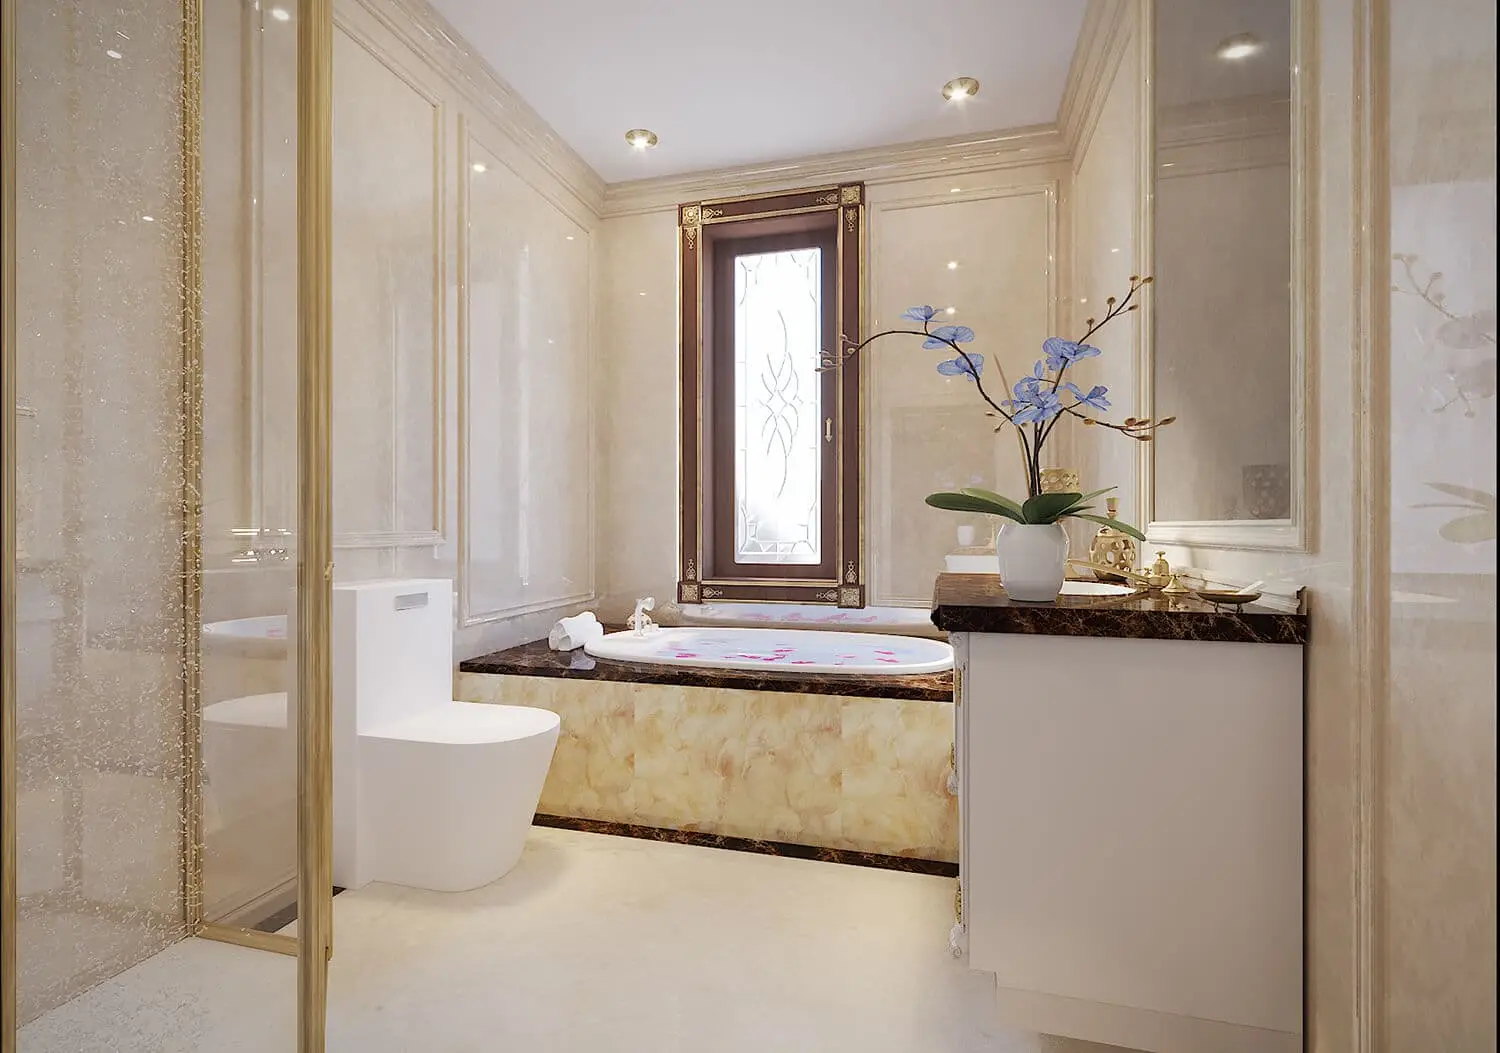 Nhà vệ sinh nổi bật với các đường nét kiến trúc tân cổ điển